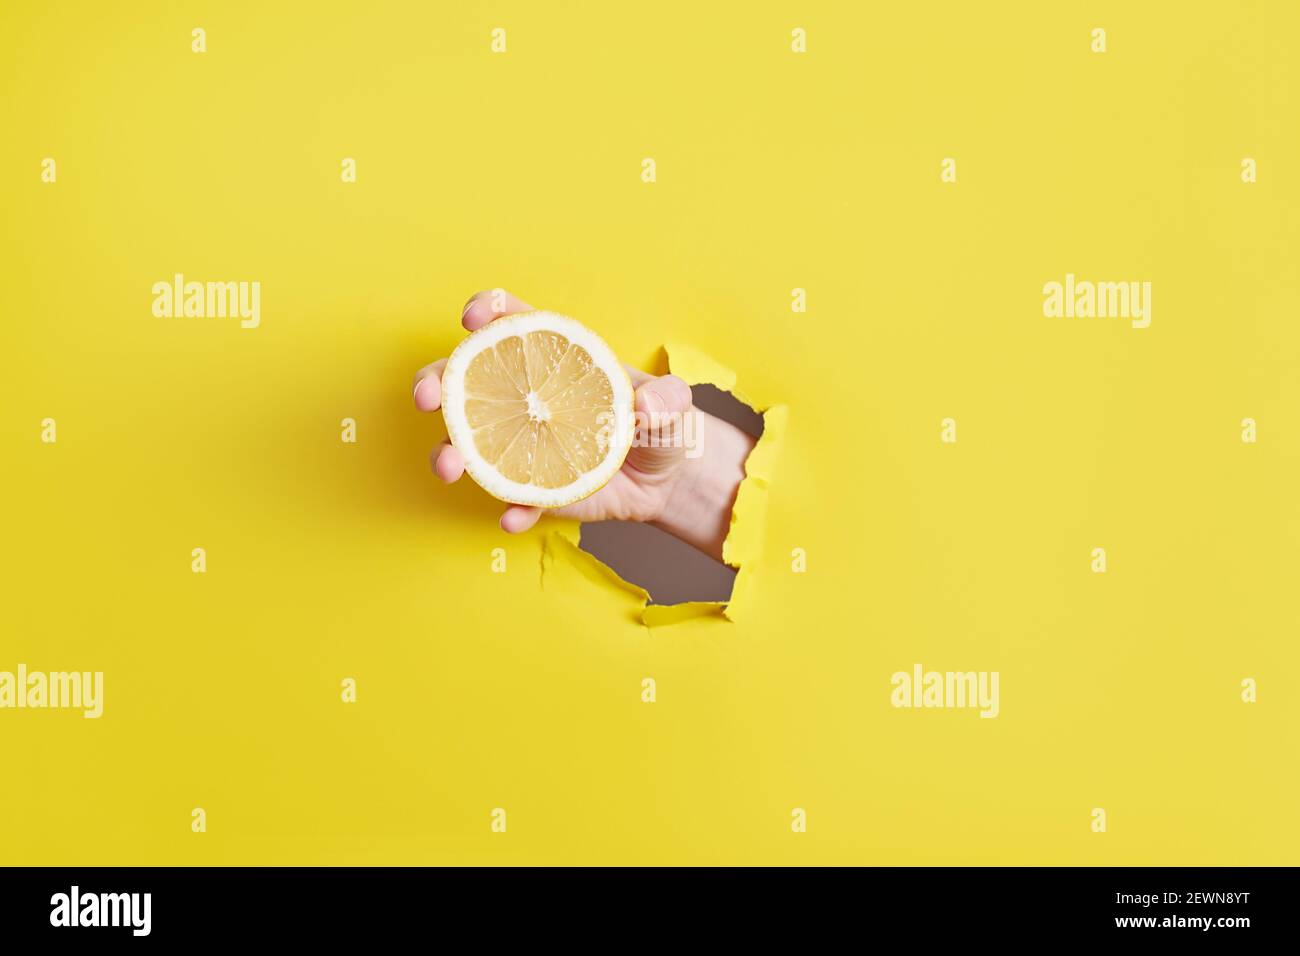 donna mano che tiene vetro con limonata attraverso il foro dentro carta gialla Foto Stock